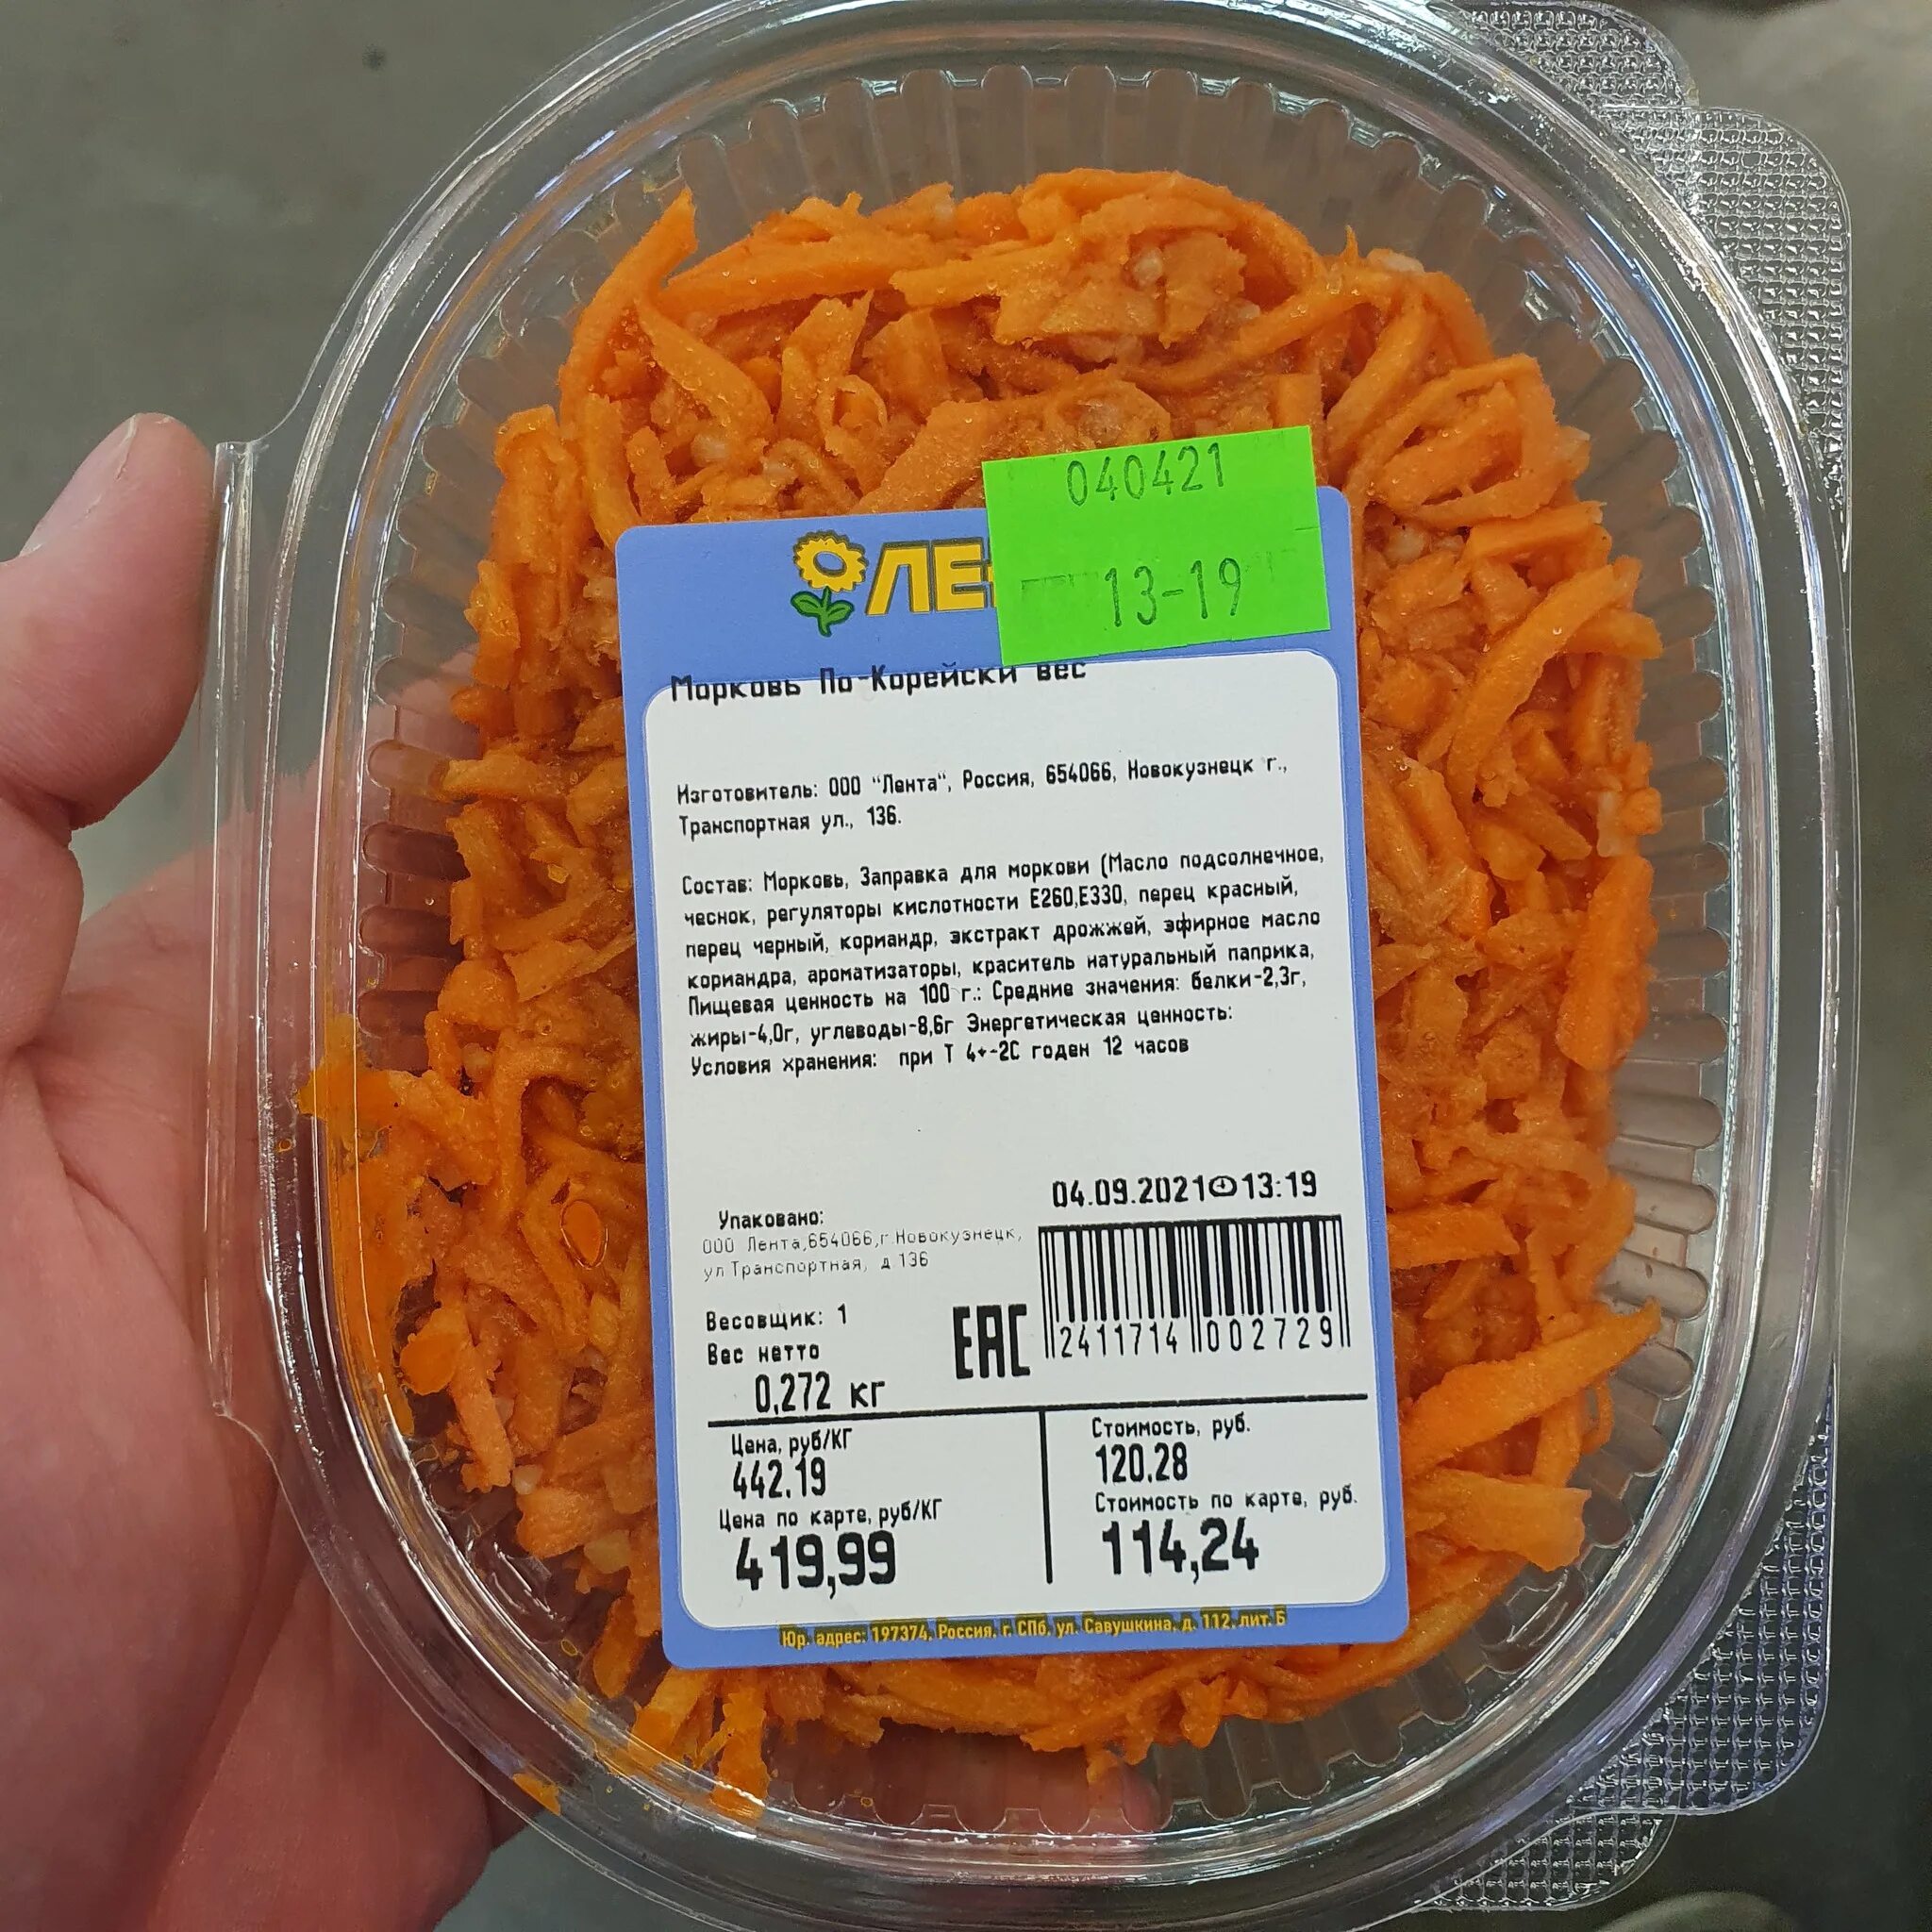 Сколько весит морковка. Морковь по корейски лента. Корейская морковка в ленте. Морковь по корейски в упаковке. Корейская морковка в магазине.